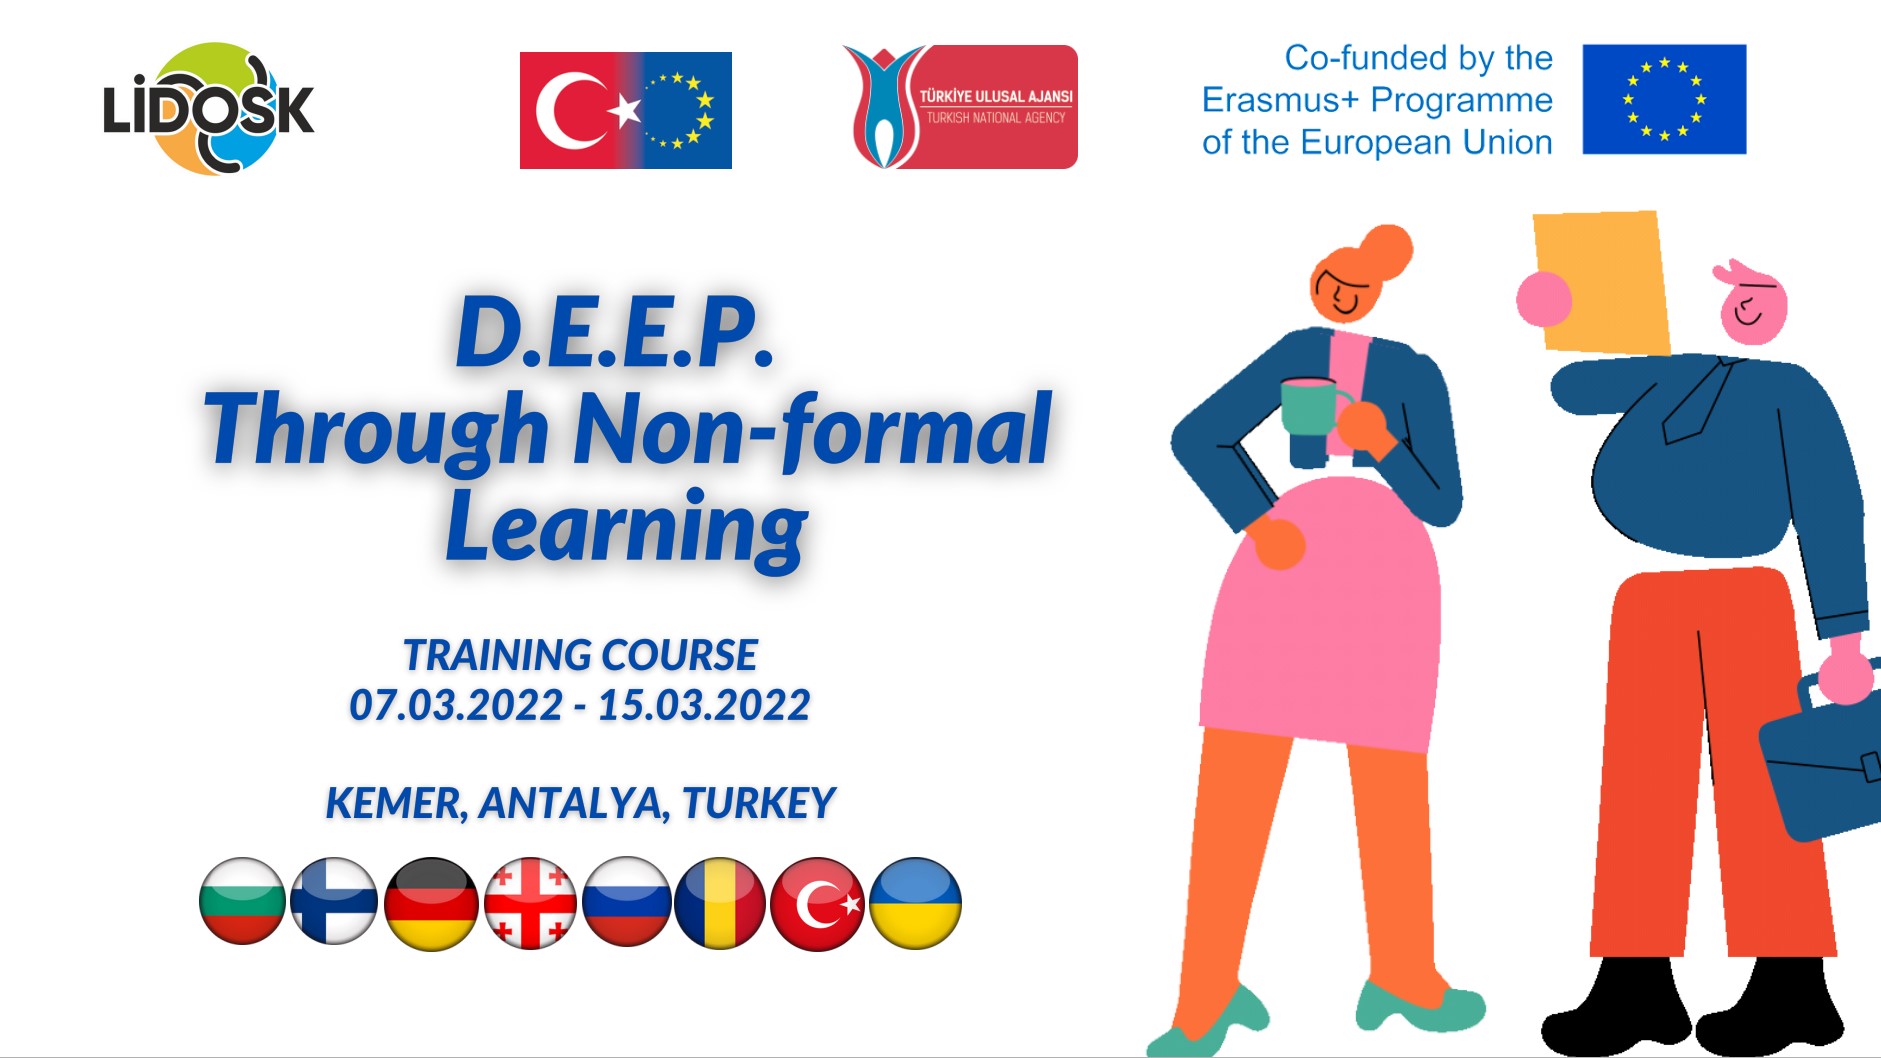 D.E.E.P. Through Non-formal Learning